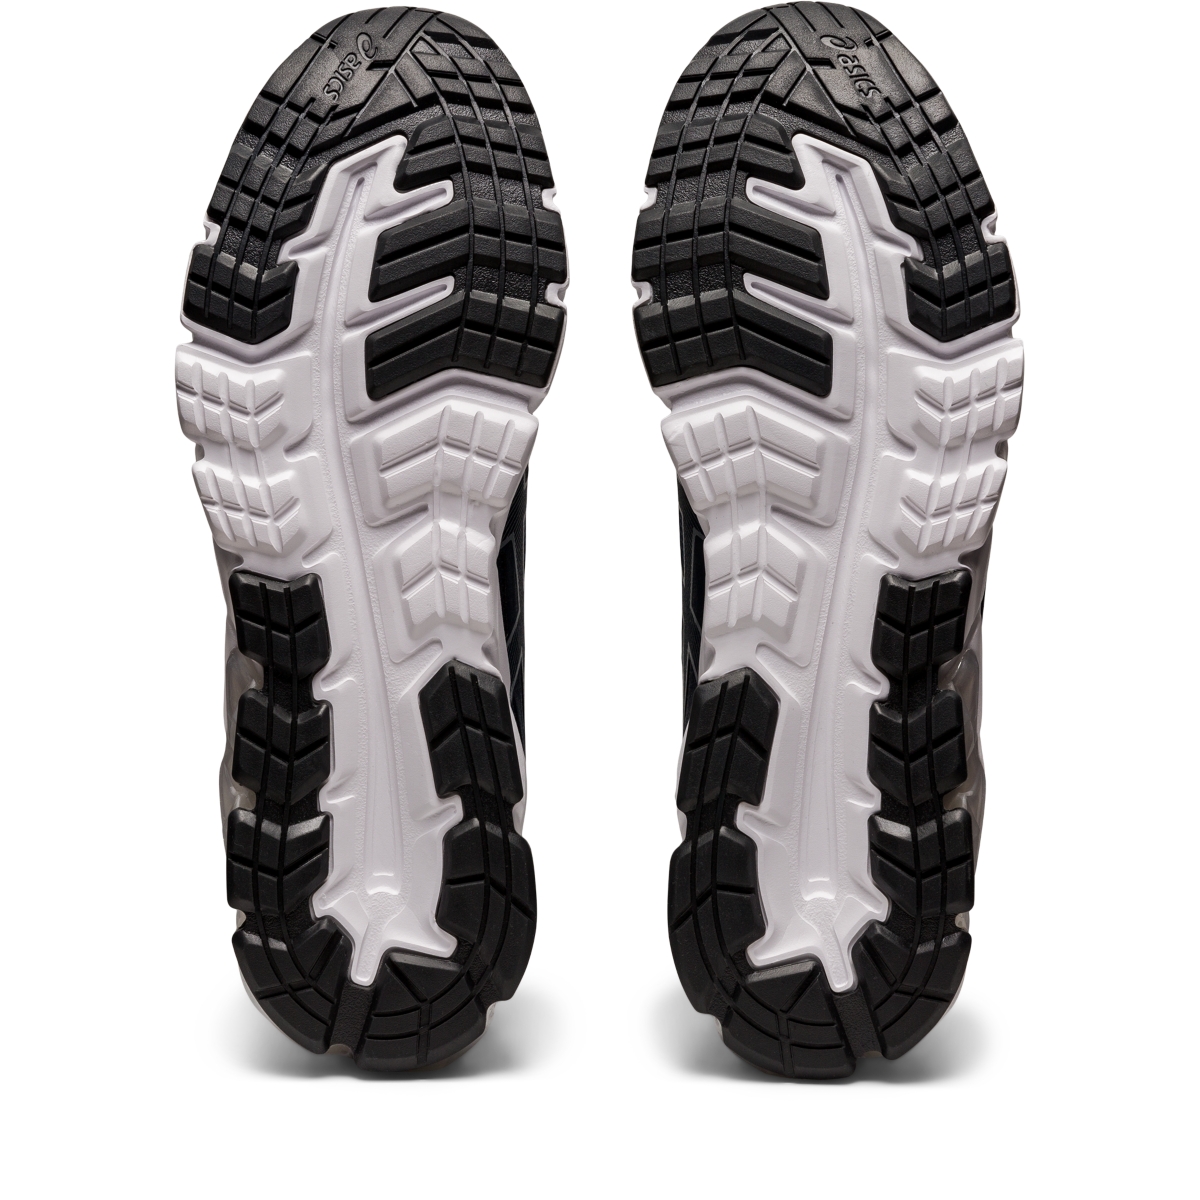 ASICS Men's GEL-QUANTUM 90 Sportstyle Shoes 1201A064 | eBay